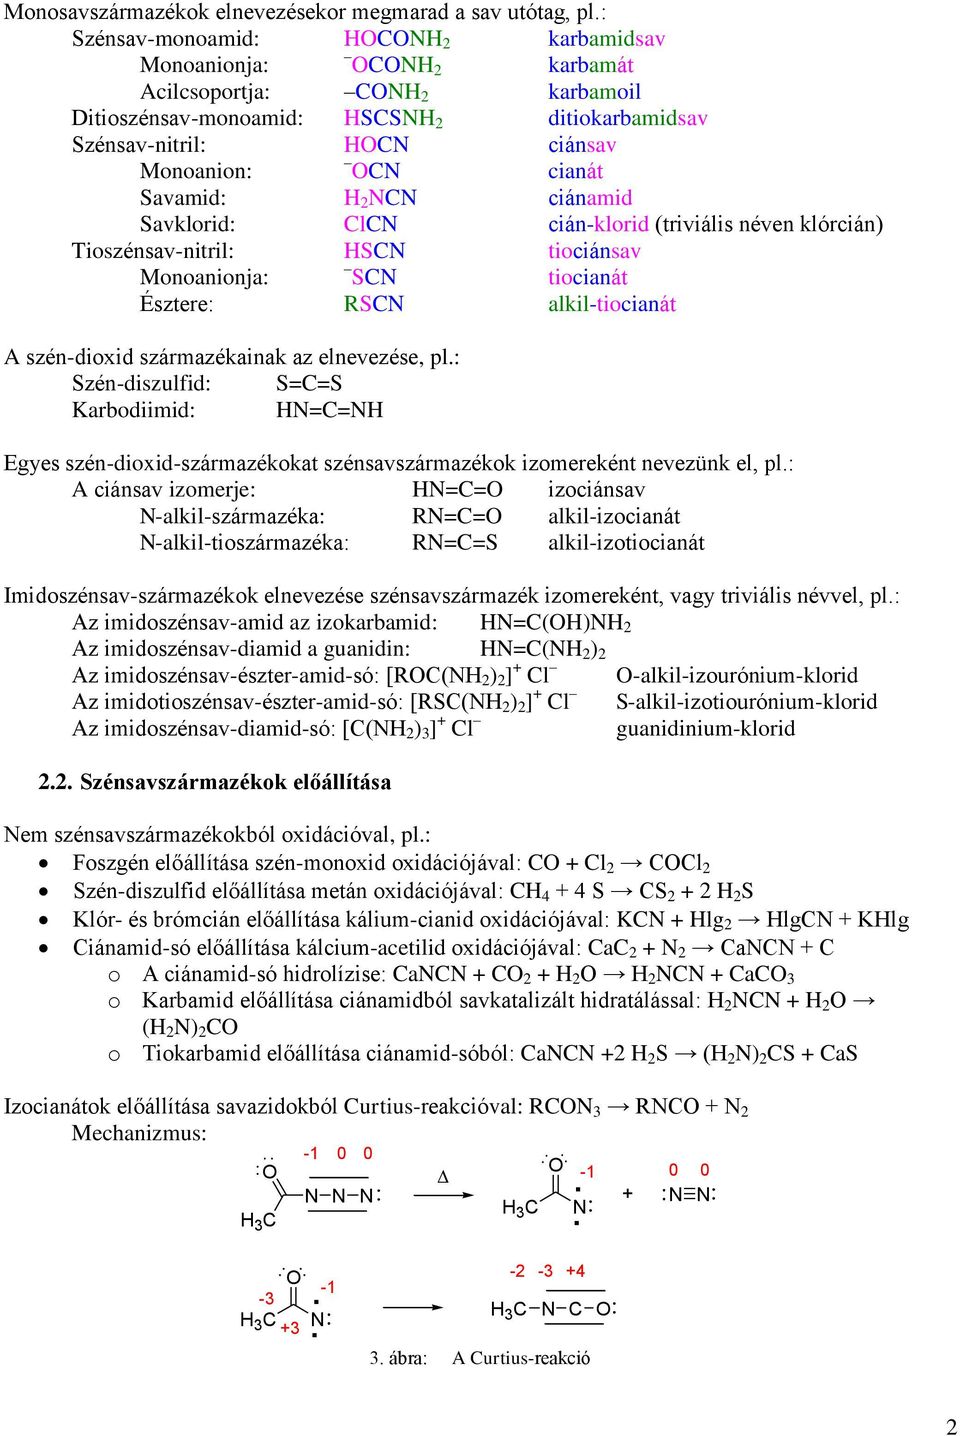 cián-klorid (triviális néven klórcián) Tioszénsav-nitril: tiociánsav Monoanionja: tiocianát Észtere: alkil-tiocianát A szén-dioxid származékainak az elnevezése, pl.